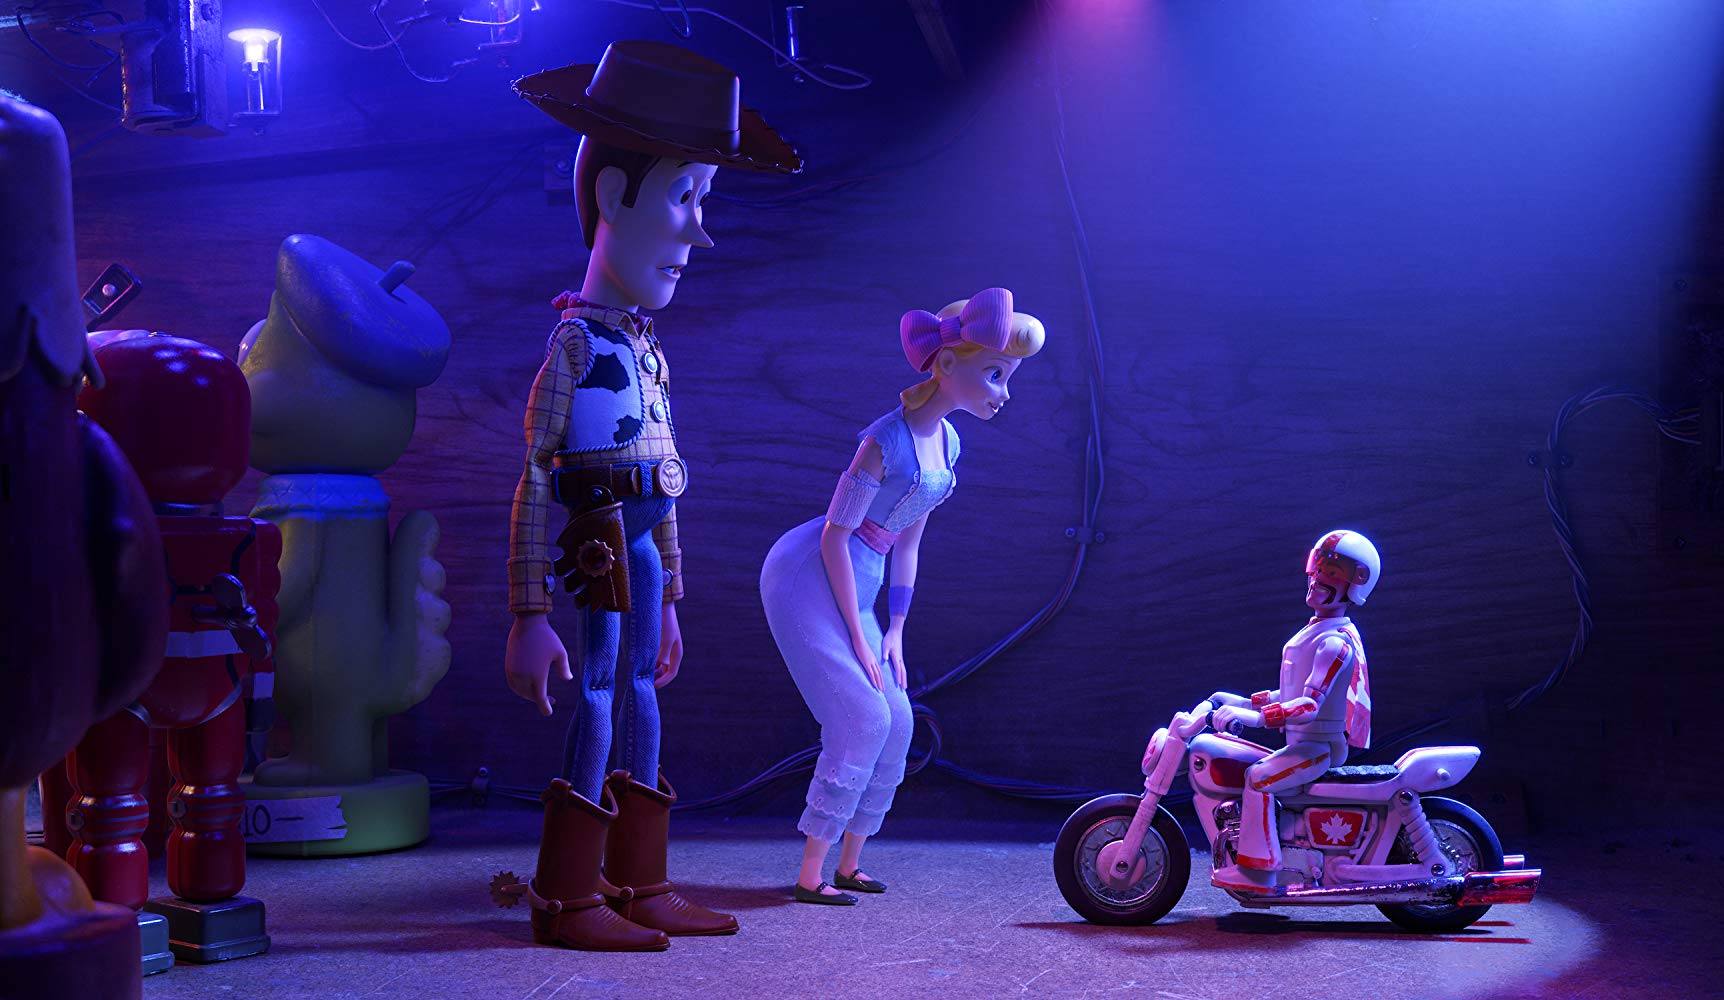 Kino sensoryczne: Toy Story 4